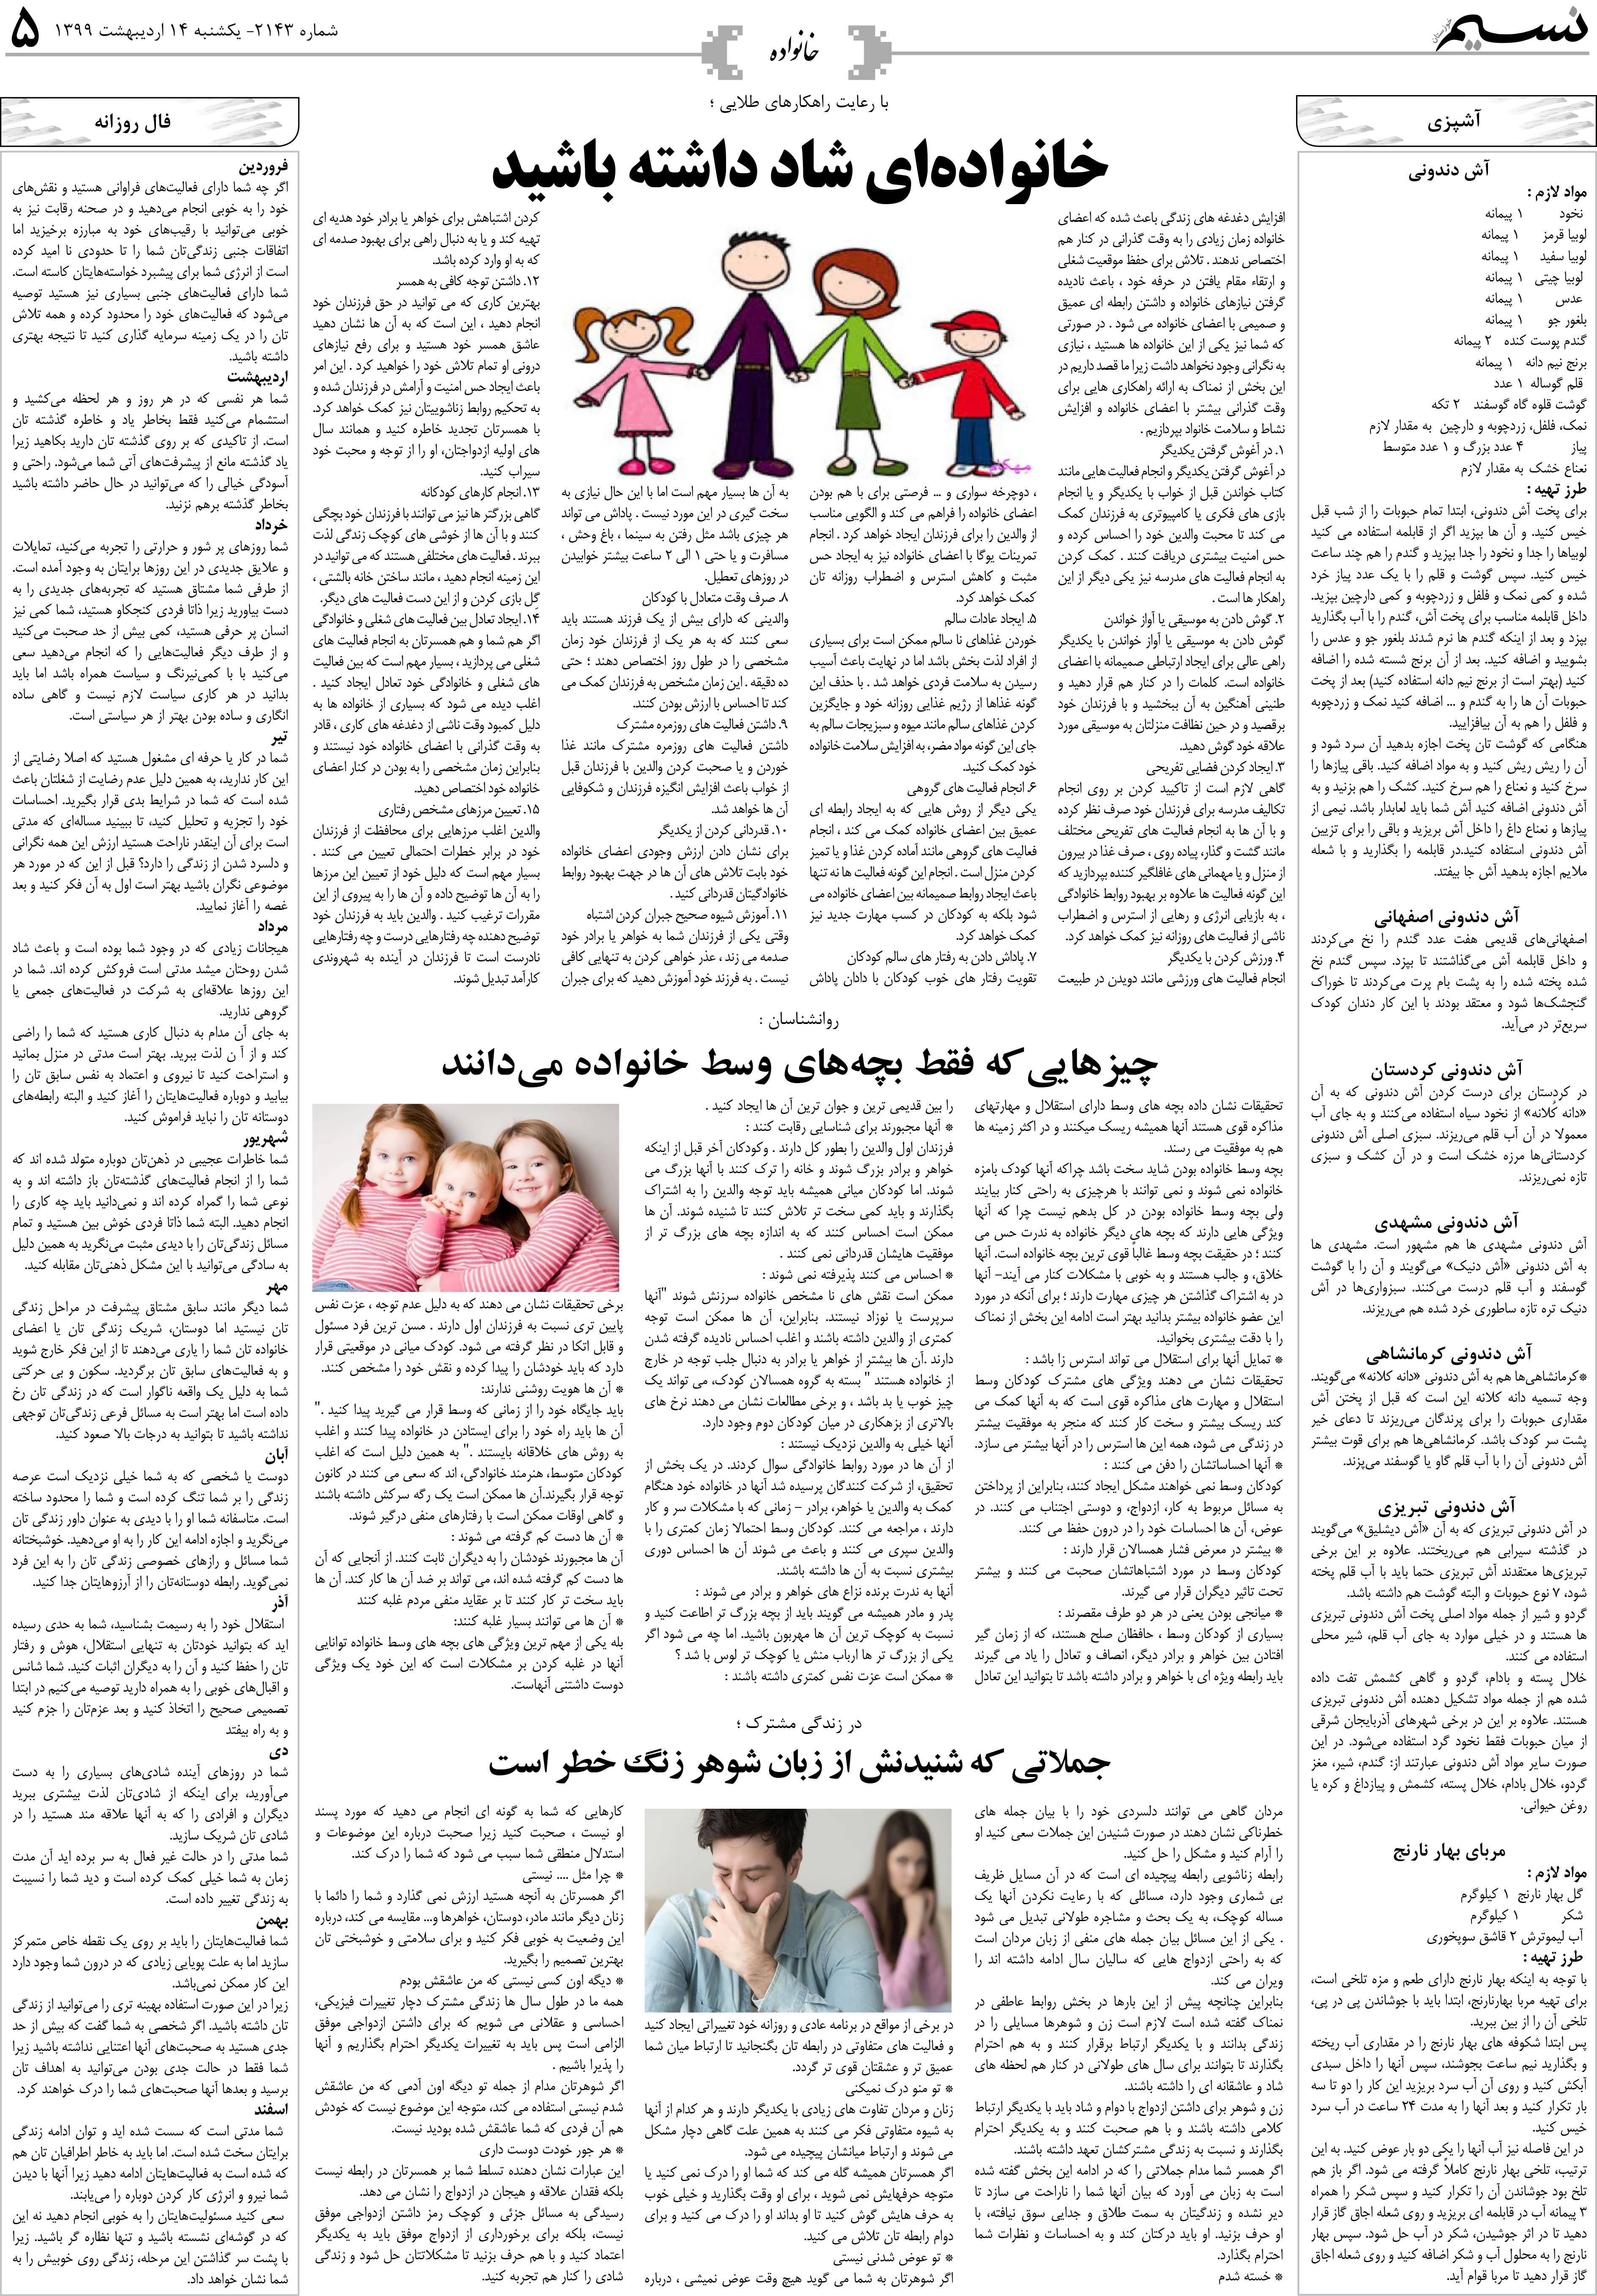 صفحه خانواده روزنامه نسیم شماره 2143